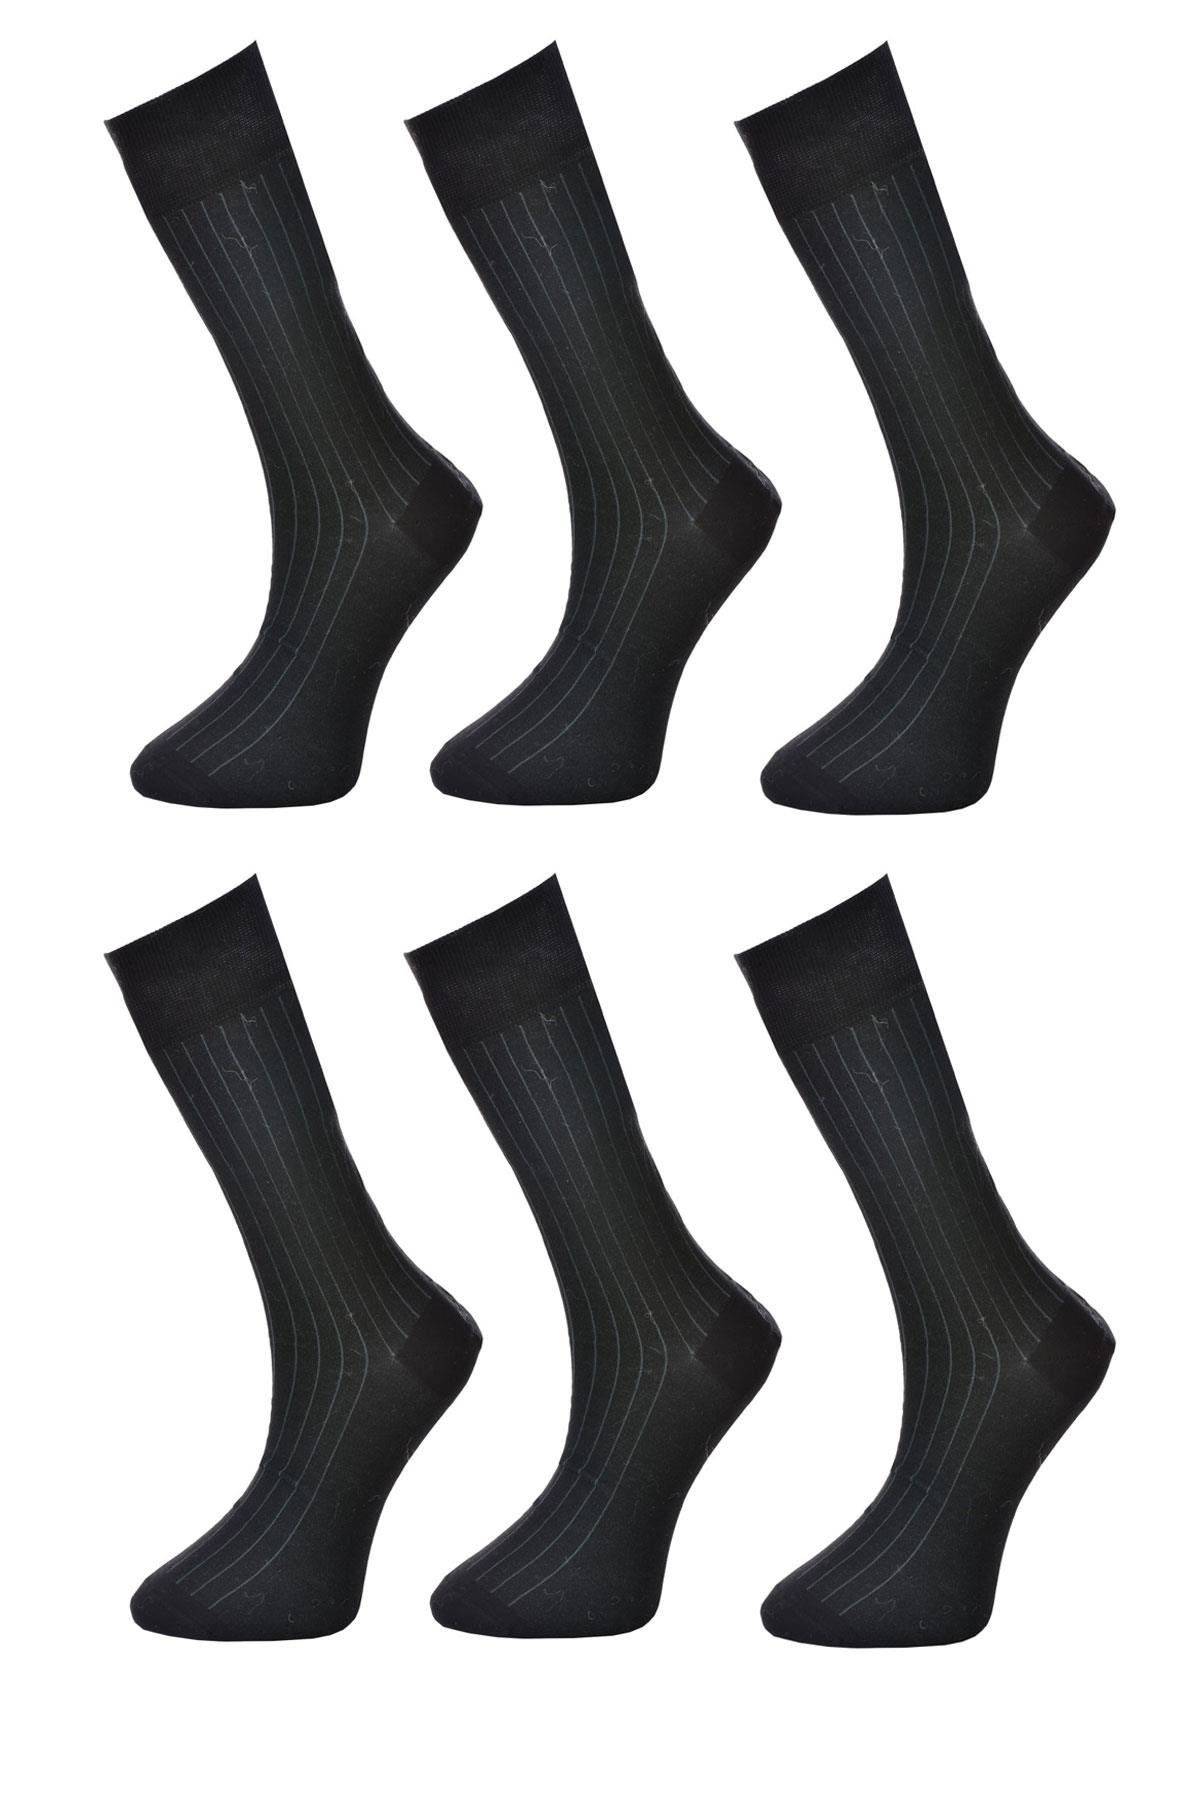 6 Çift Erkek Desenli Merserize Soket Çorap SİYAH-GRİ